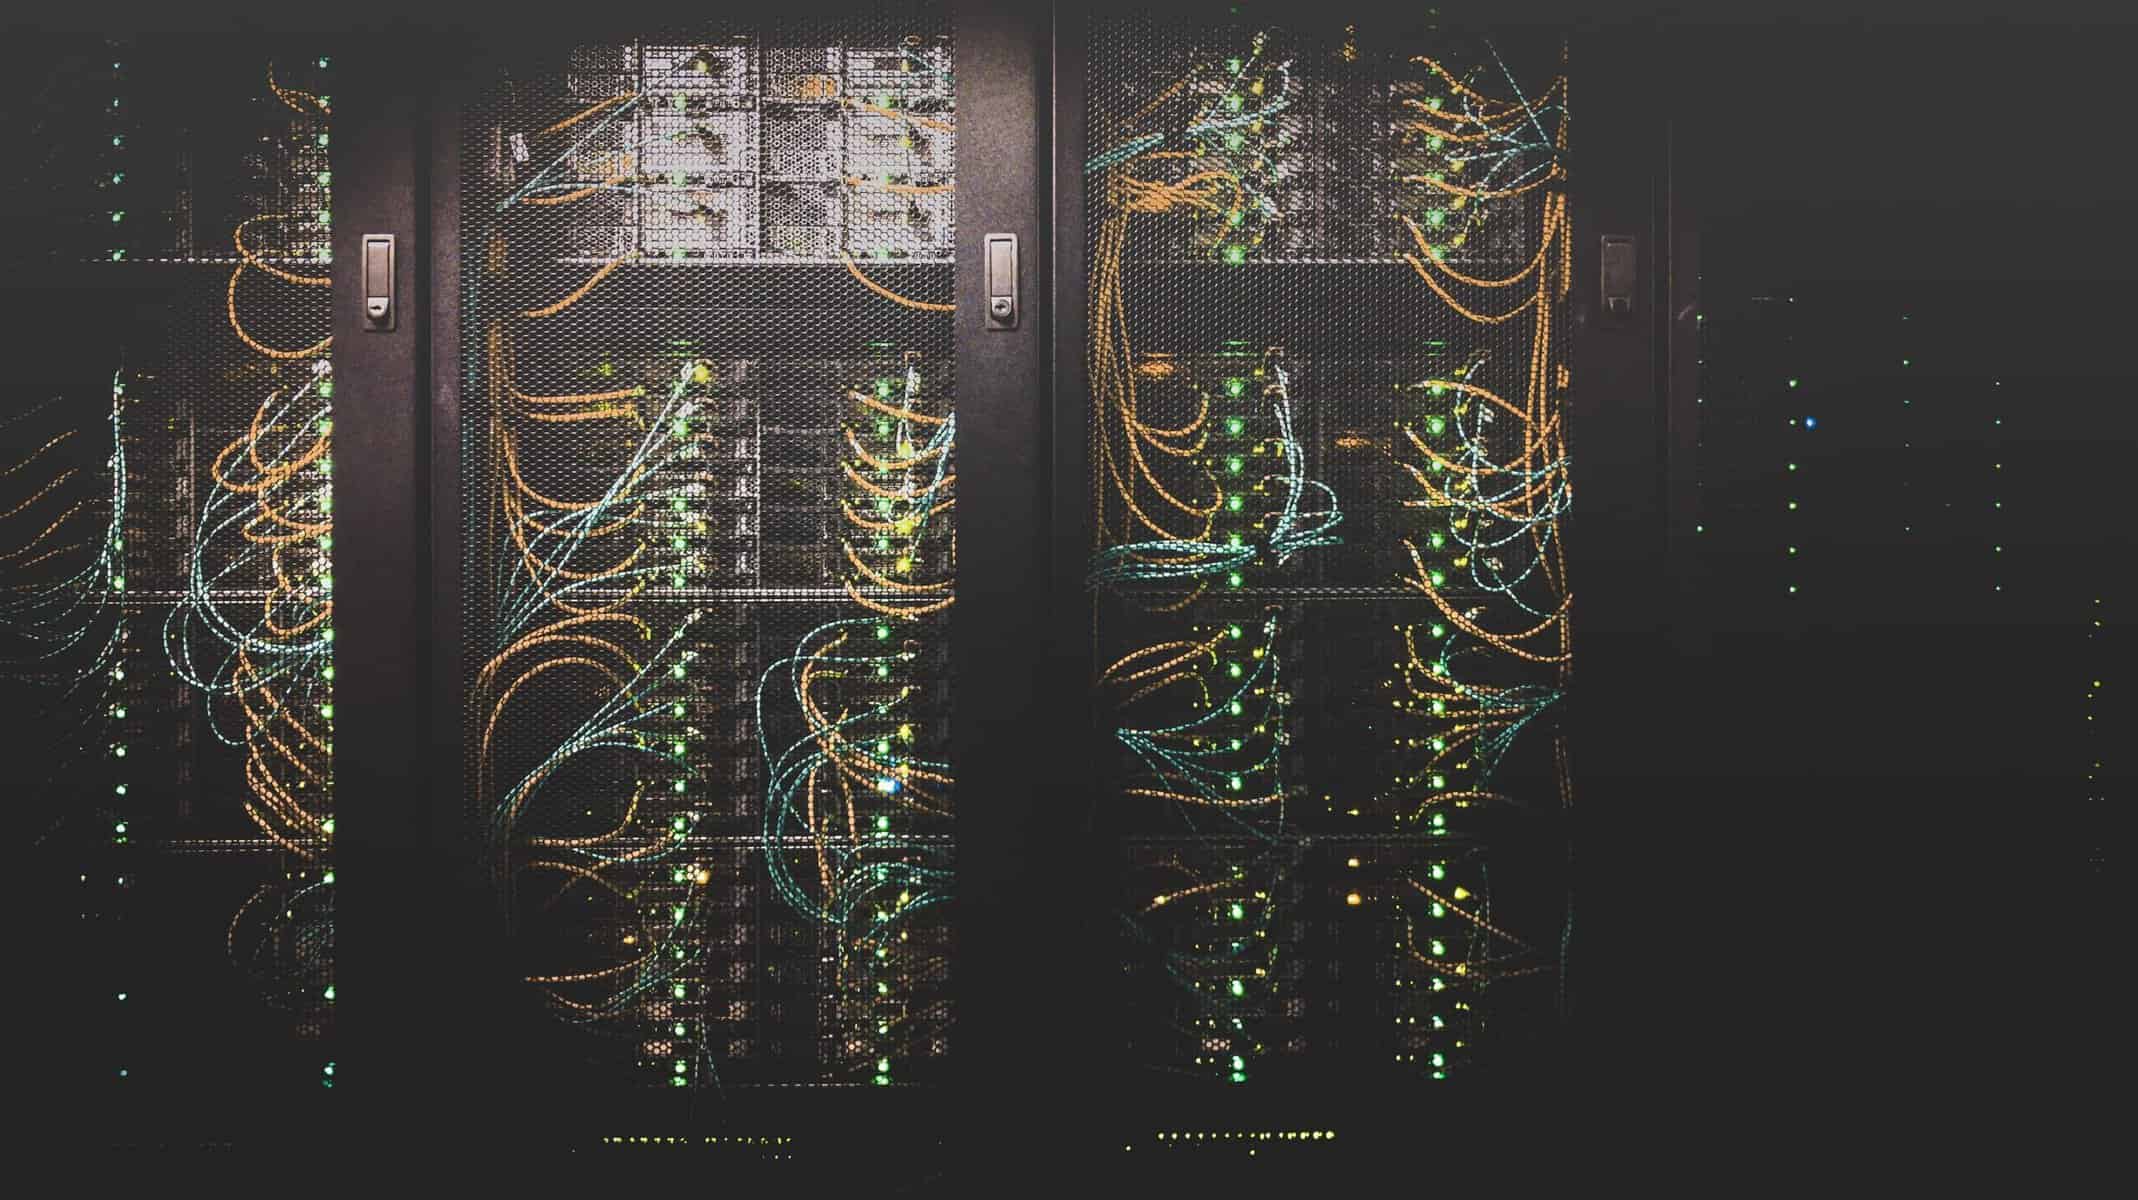 Server cabinets open for data center maintenance